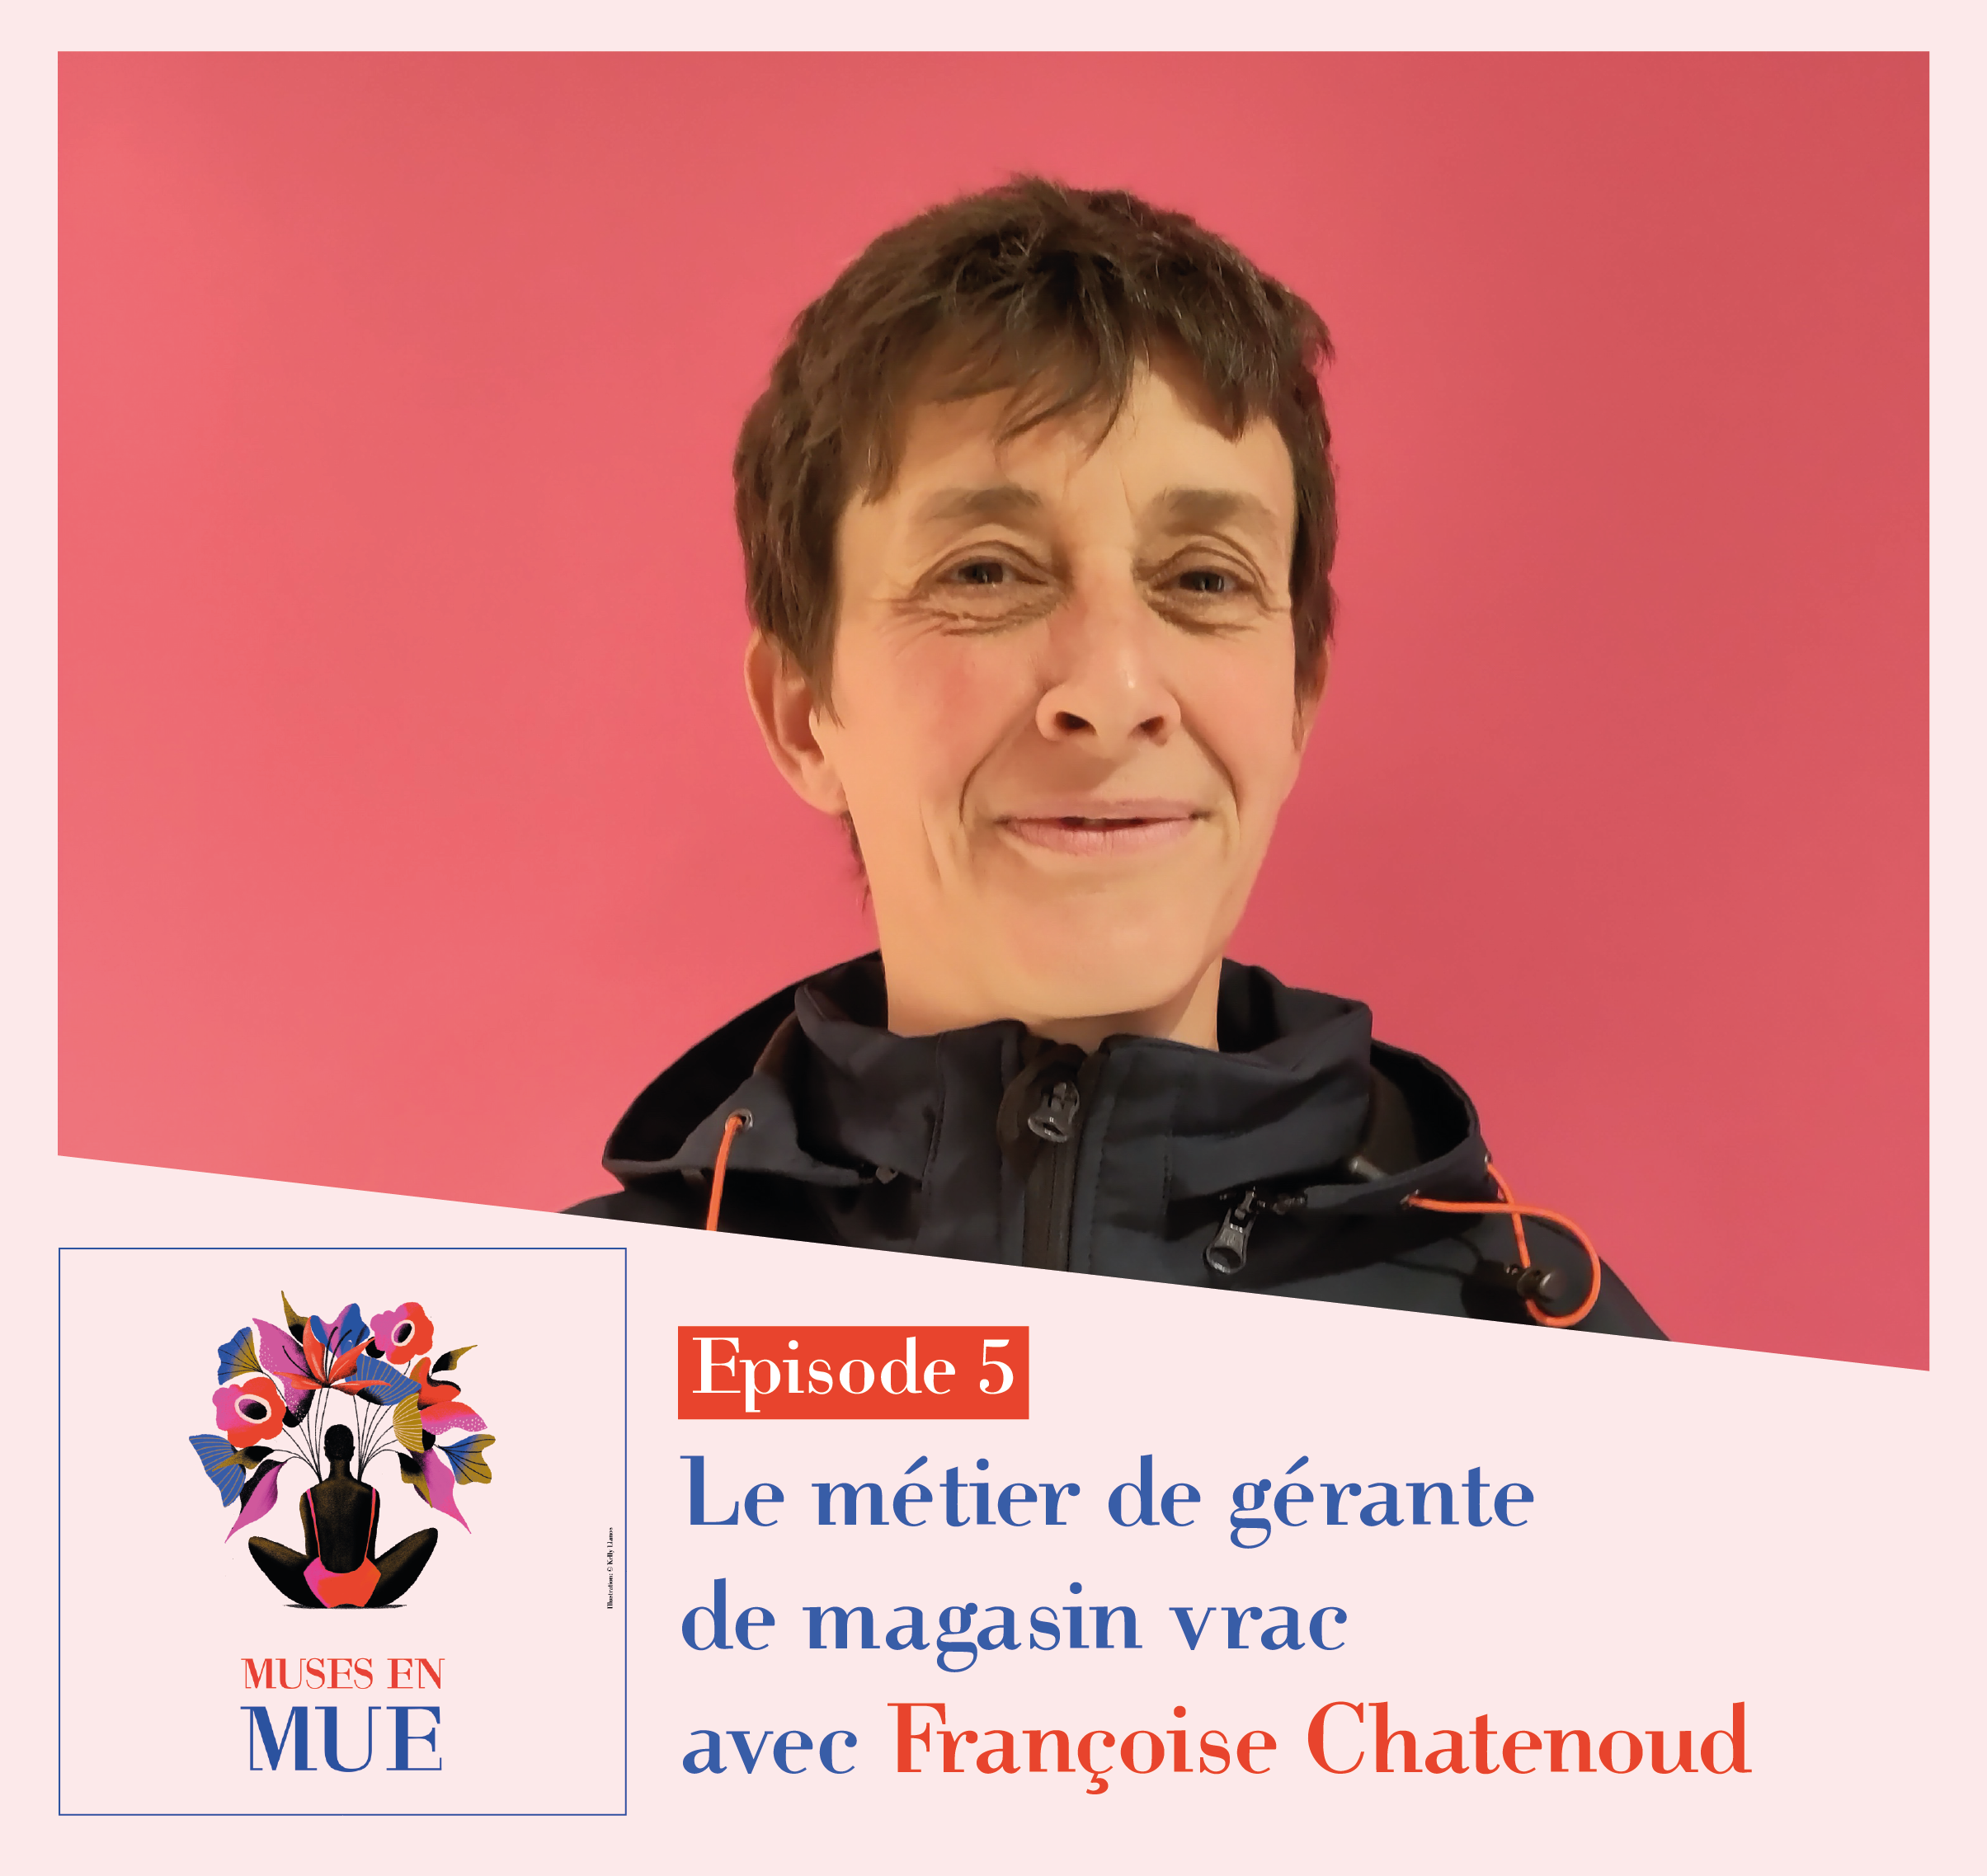 MUSES EN MUE – Episode 5 avec Françoise Chatenoud